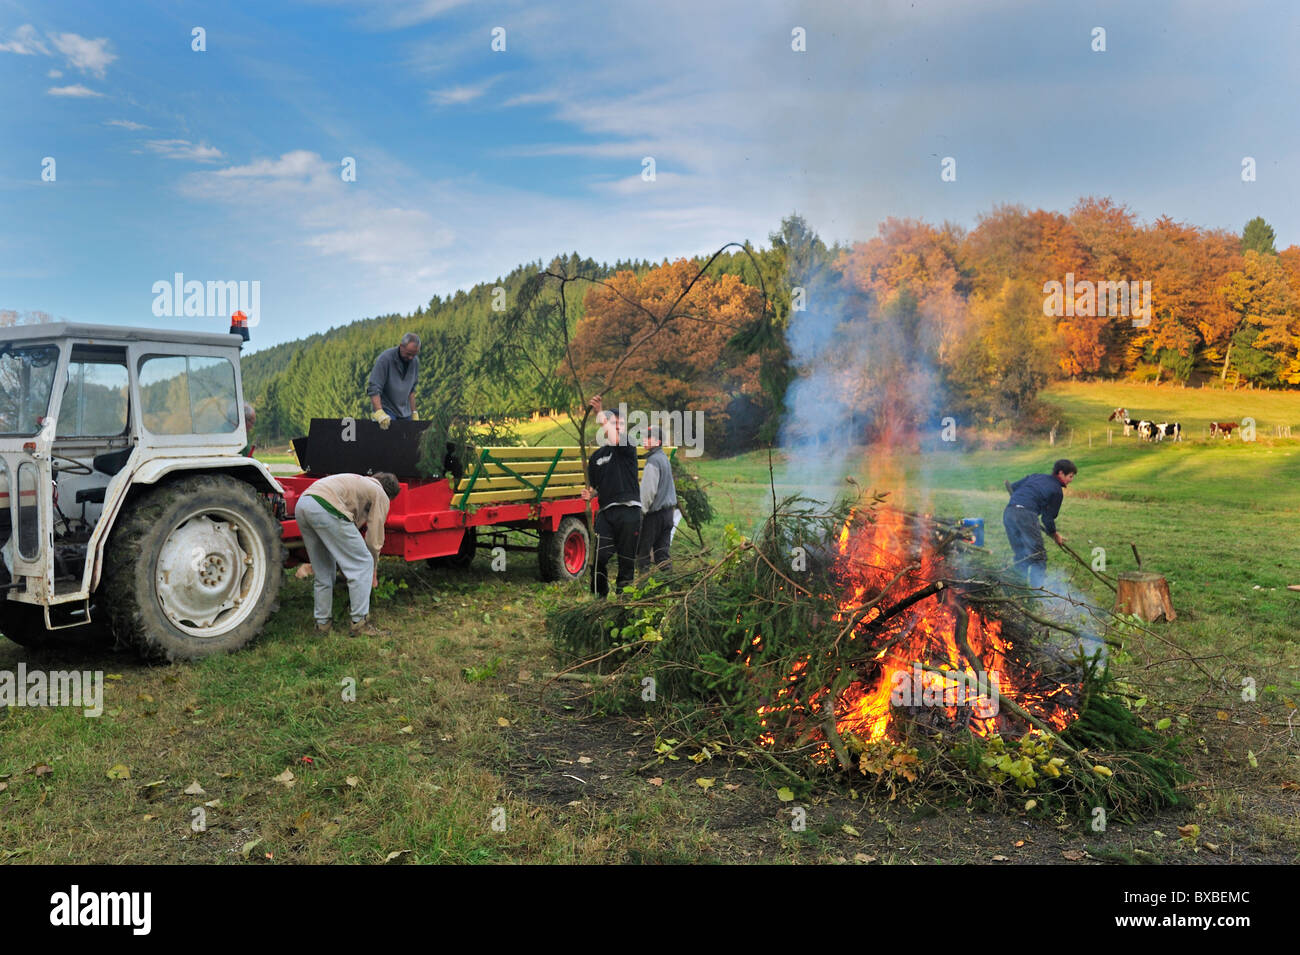 Arbeitende Jugendlichen machen riesige Feuer durch das Verbrennen von Beschneidungen / Drum und dran auf Bauernhof, Ardennen, Belgien Stockfoto